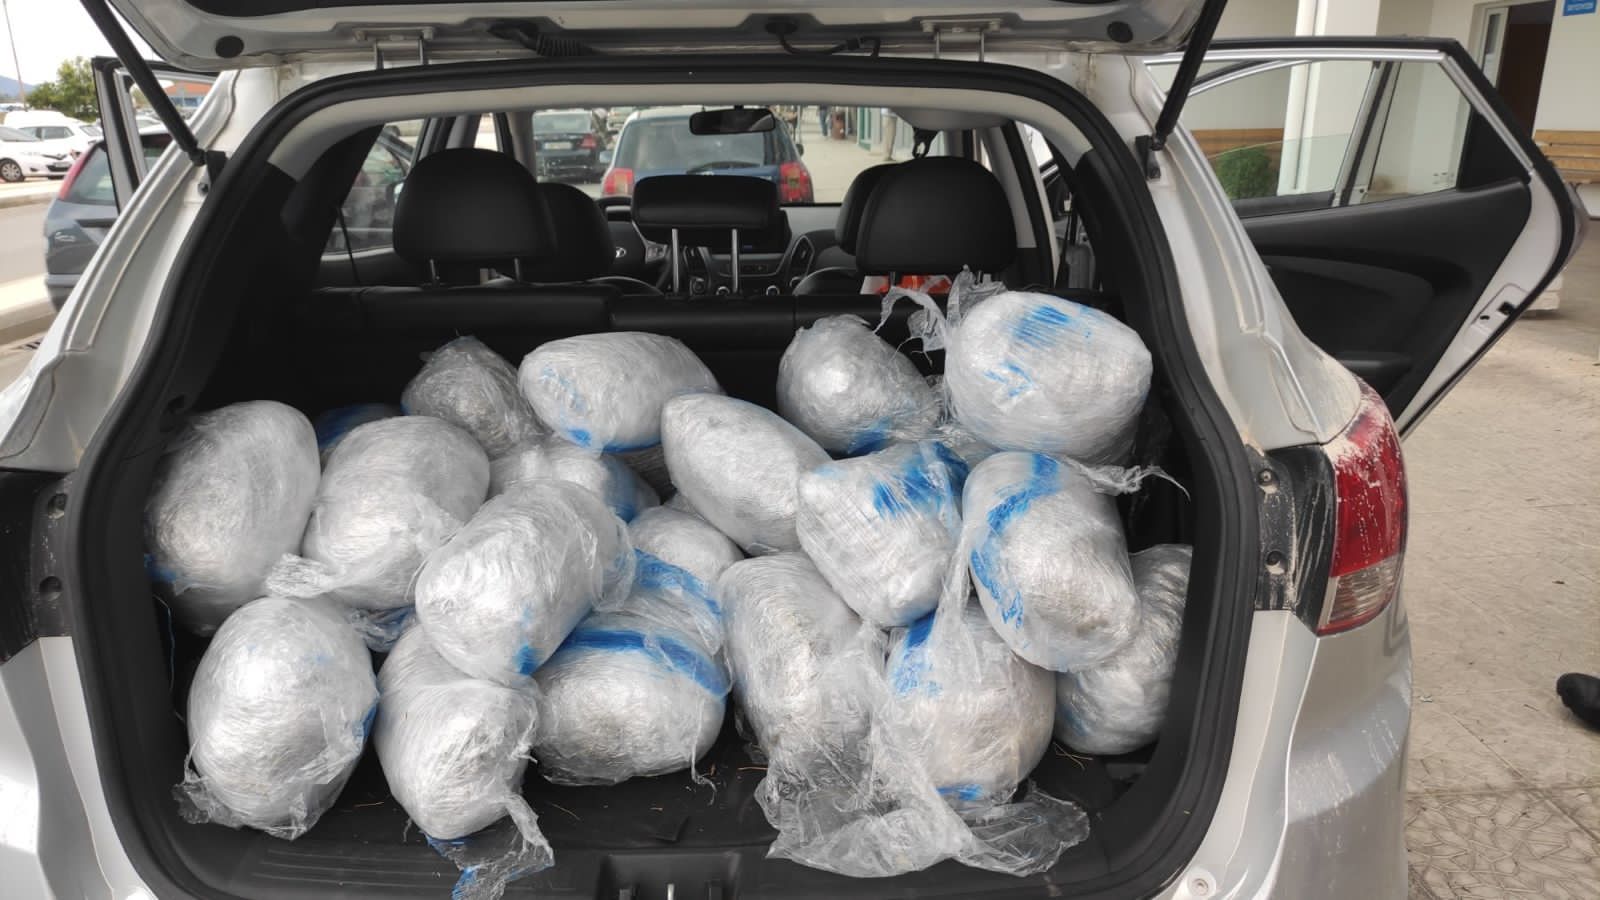 Shqiptari kapet në Igumenicë me 77 kg kanabis në automjet